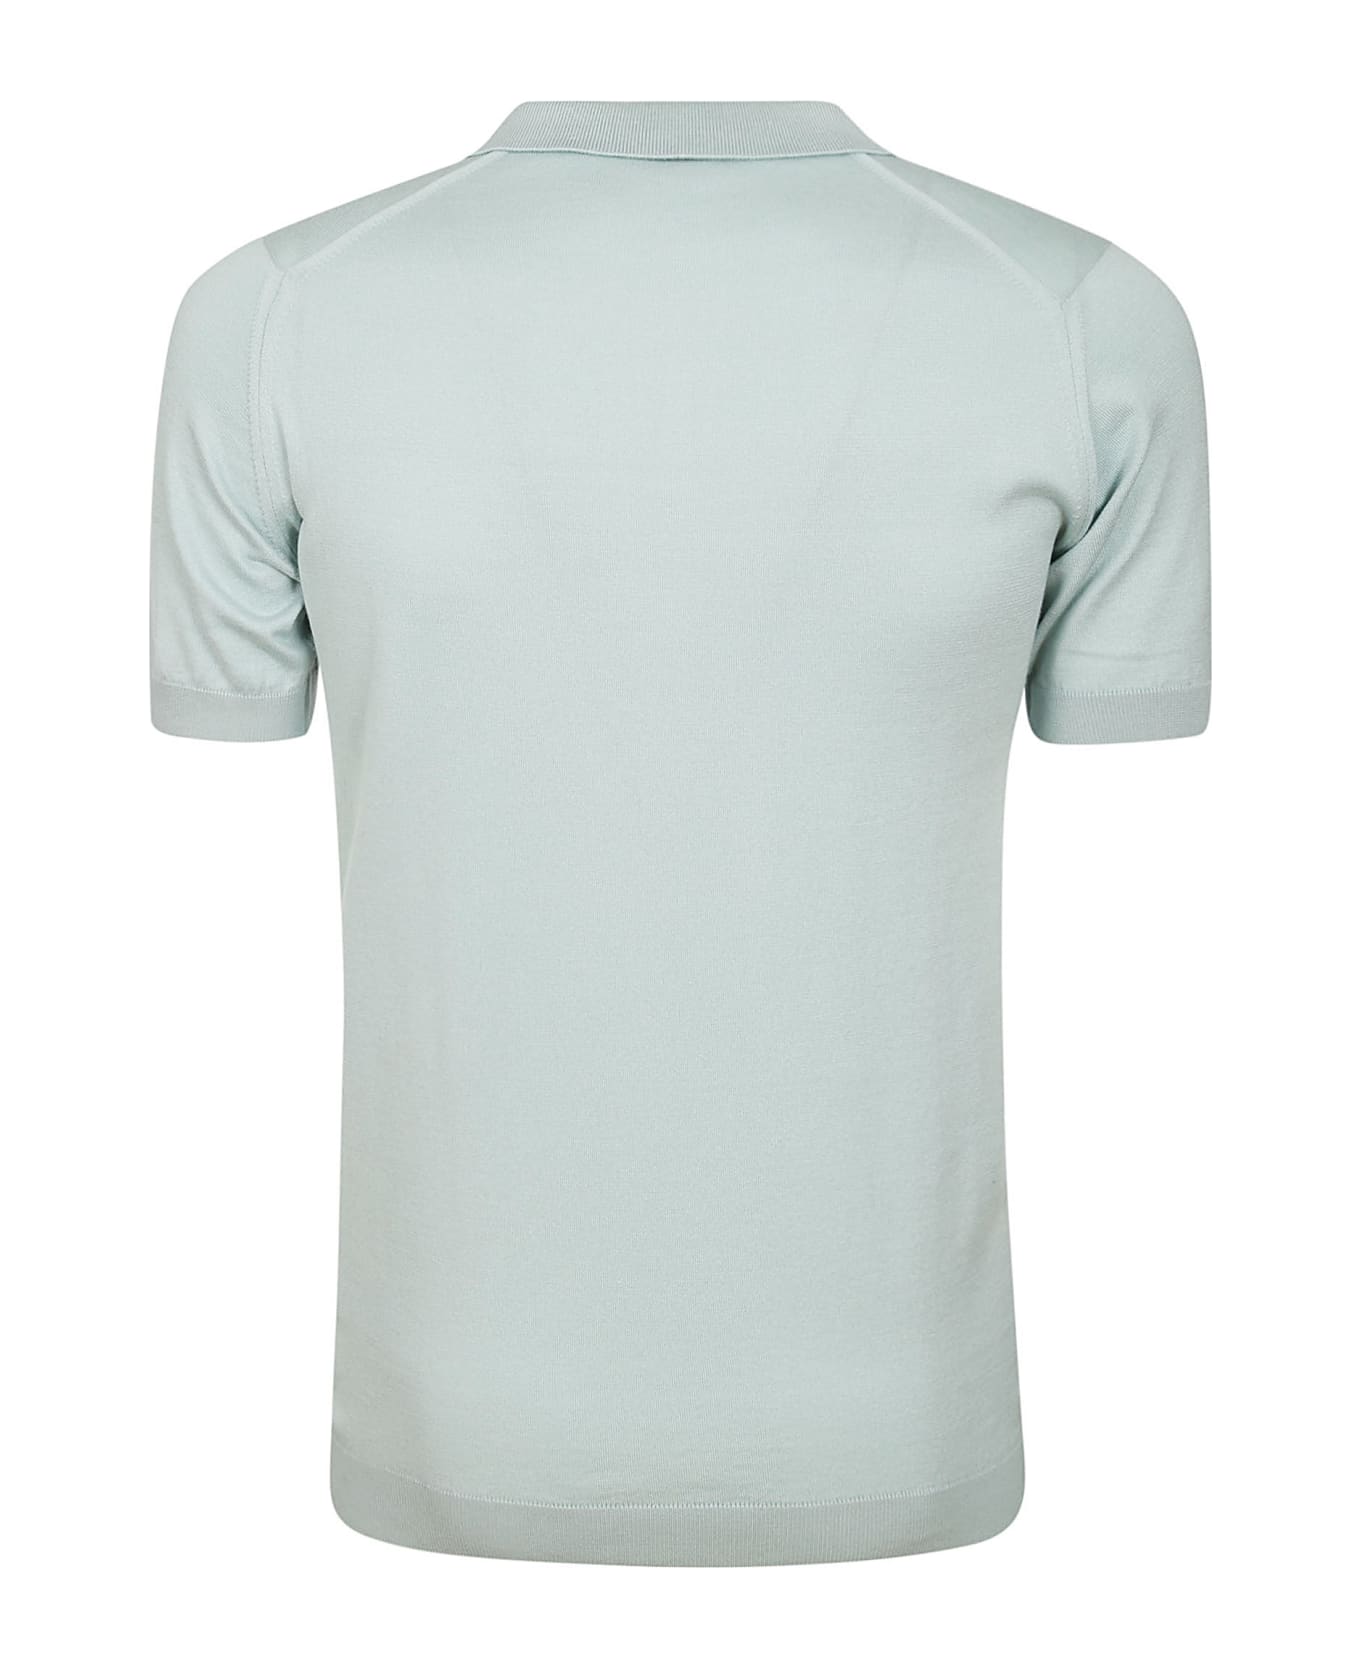 John Smedley Noah Skipper Collar Shirt Ss - Mint